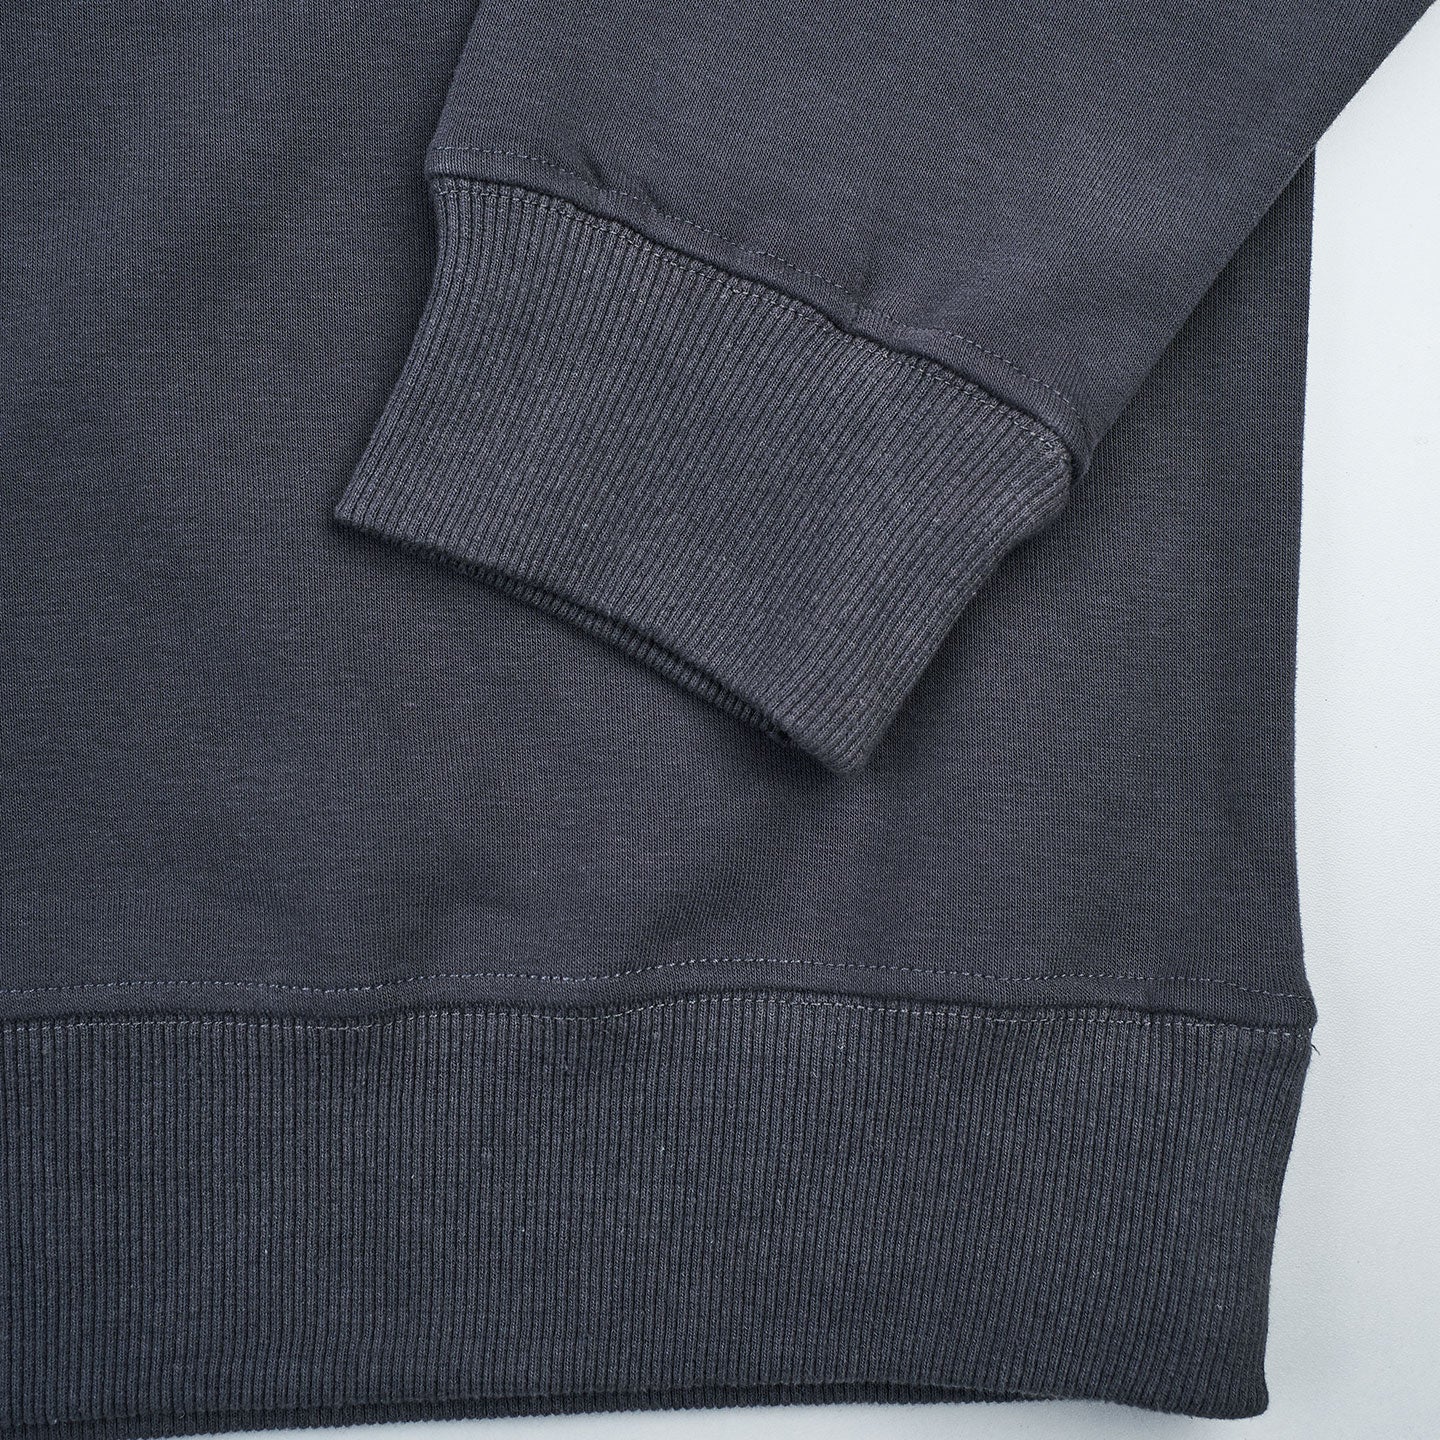 Outset Monochrome Sweatshirt - Grey